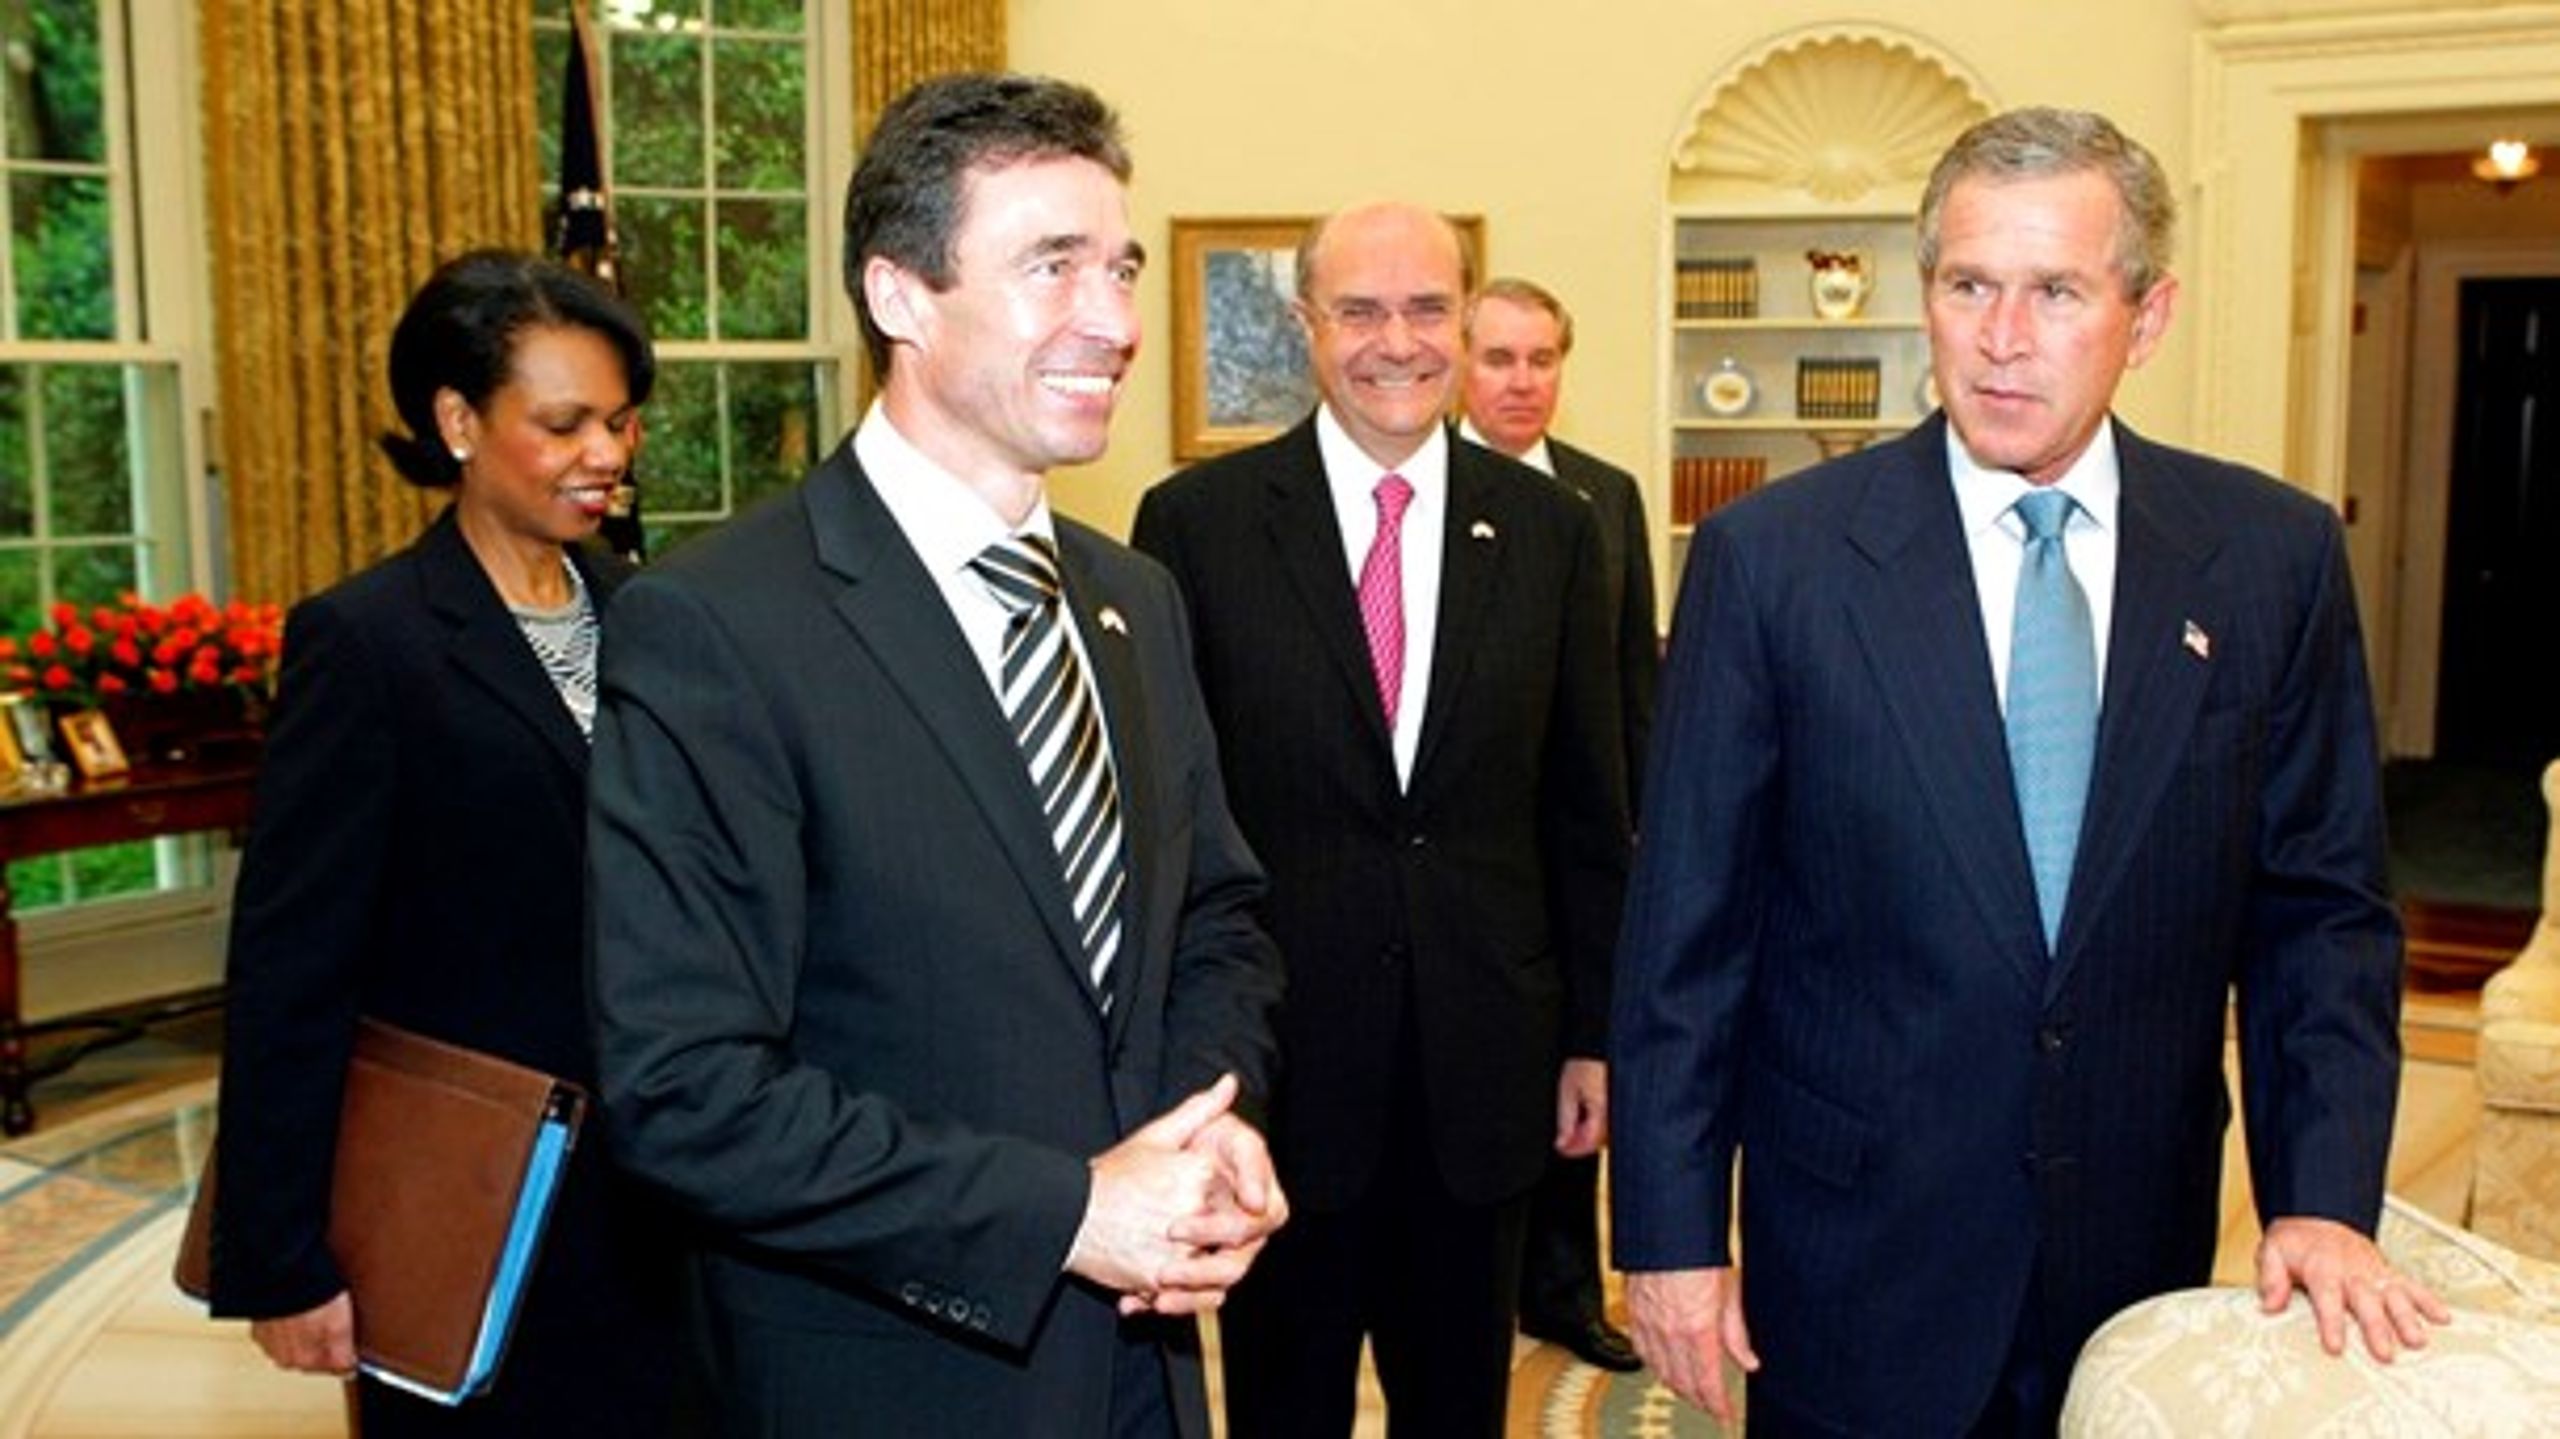 Ulrik Federspiel (med rødt slips i baggrunden) er&nbsp;som ambassadør i USA med til Anders Fogh Rasmussens møde med George W. Bush&nbsp;i Det Hvide Hus i 2003.&nbsp;